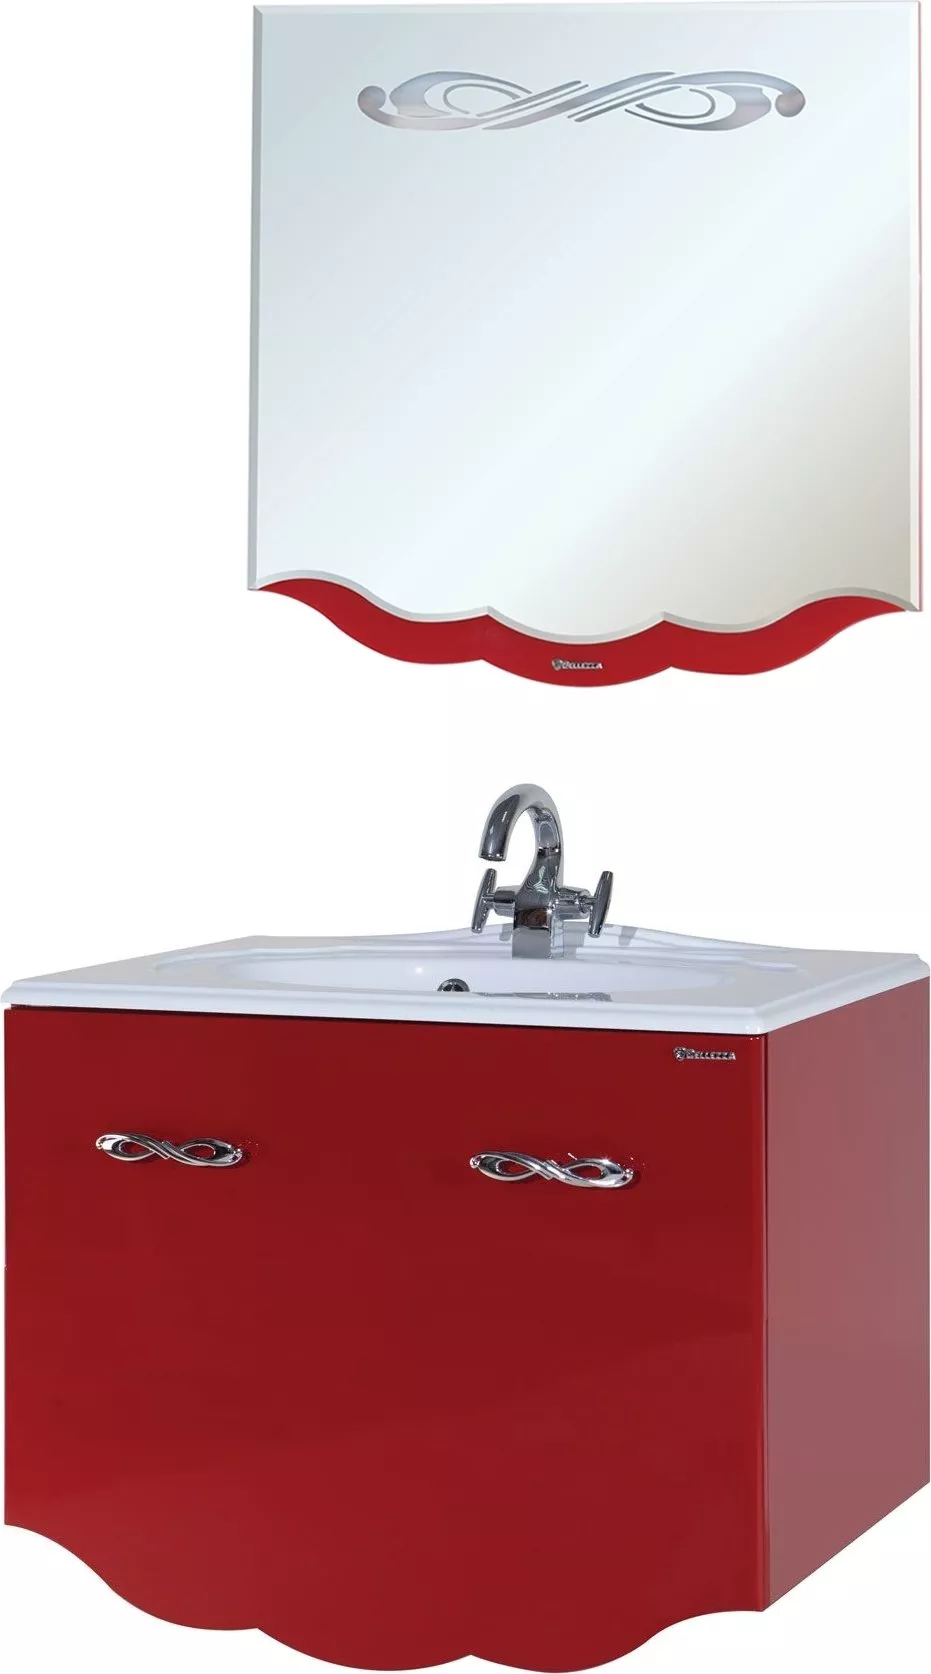 Мебель для ванной Bellezza Версаль 100 красная 1 внутренний ящик, размер 100, цвет белый - фото 1